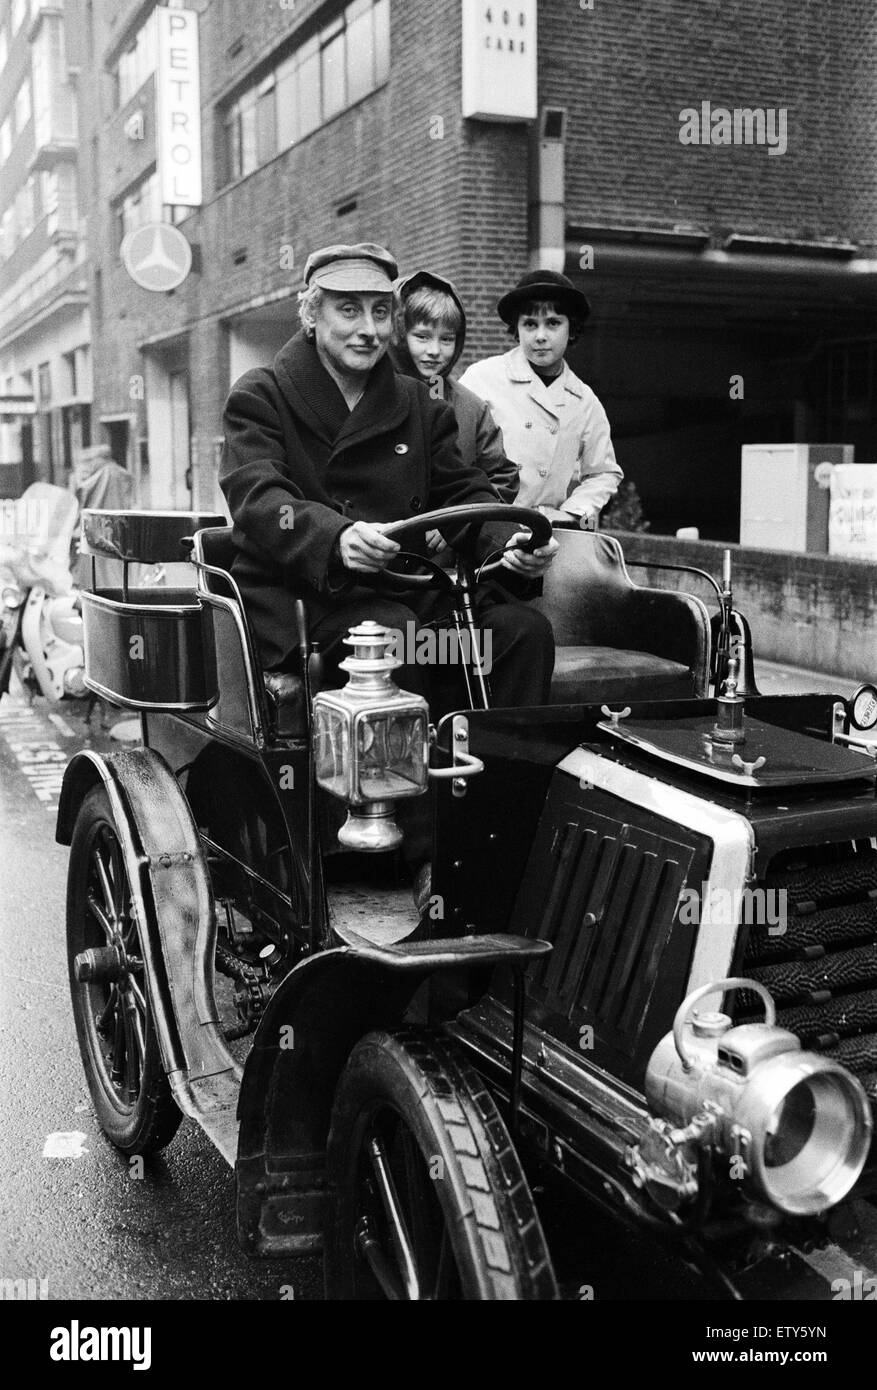 Spike Milligan aus für eine Fahrt im Regen in einem 1901 Durkopp ausgeliehen von Montague Motor Museum. Spike wird fahren es in London, Brighton Veteran Auto laufen. Mit ihm auf einen Probelauf sind seine 10 jährige Tochter Sile (links) und ihre Freundin Zosia. Stockfoto